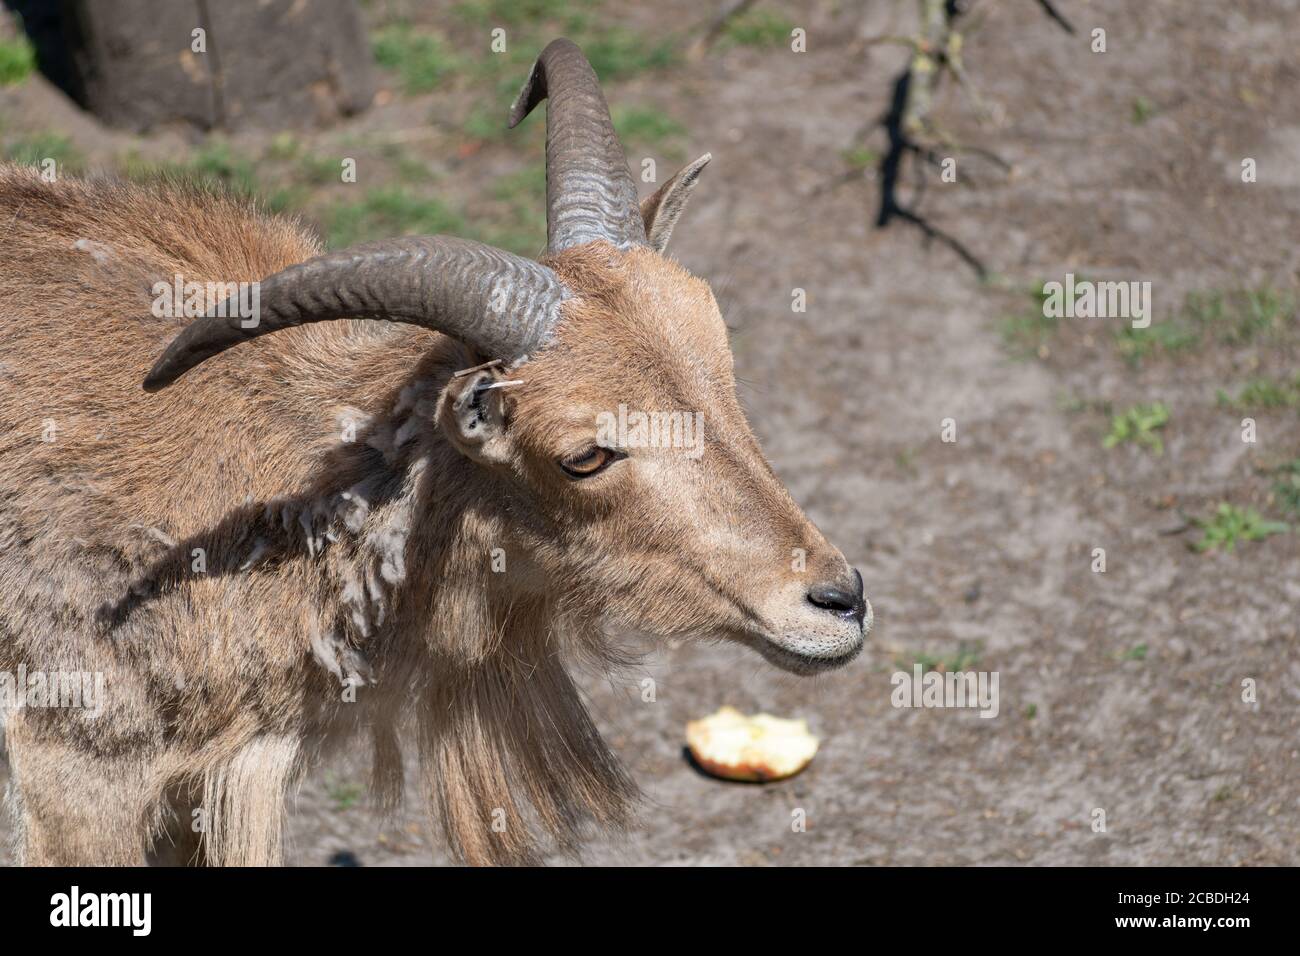 Nahaufnahme eines Barbaren Schafes oder aoudad in einem Zoo Bei Tageslicht Stockfoto